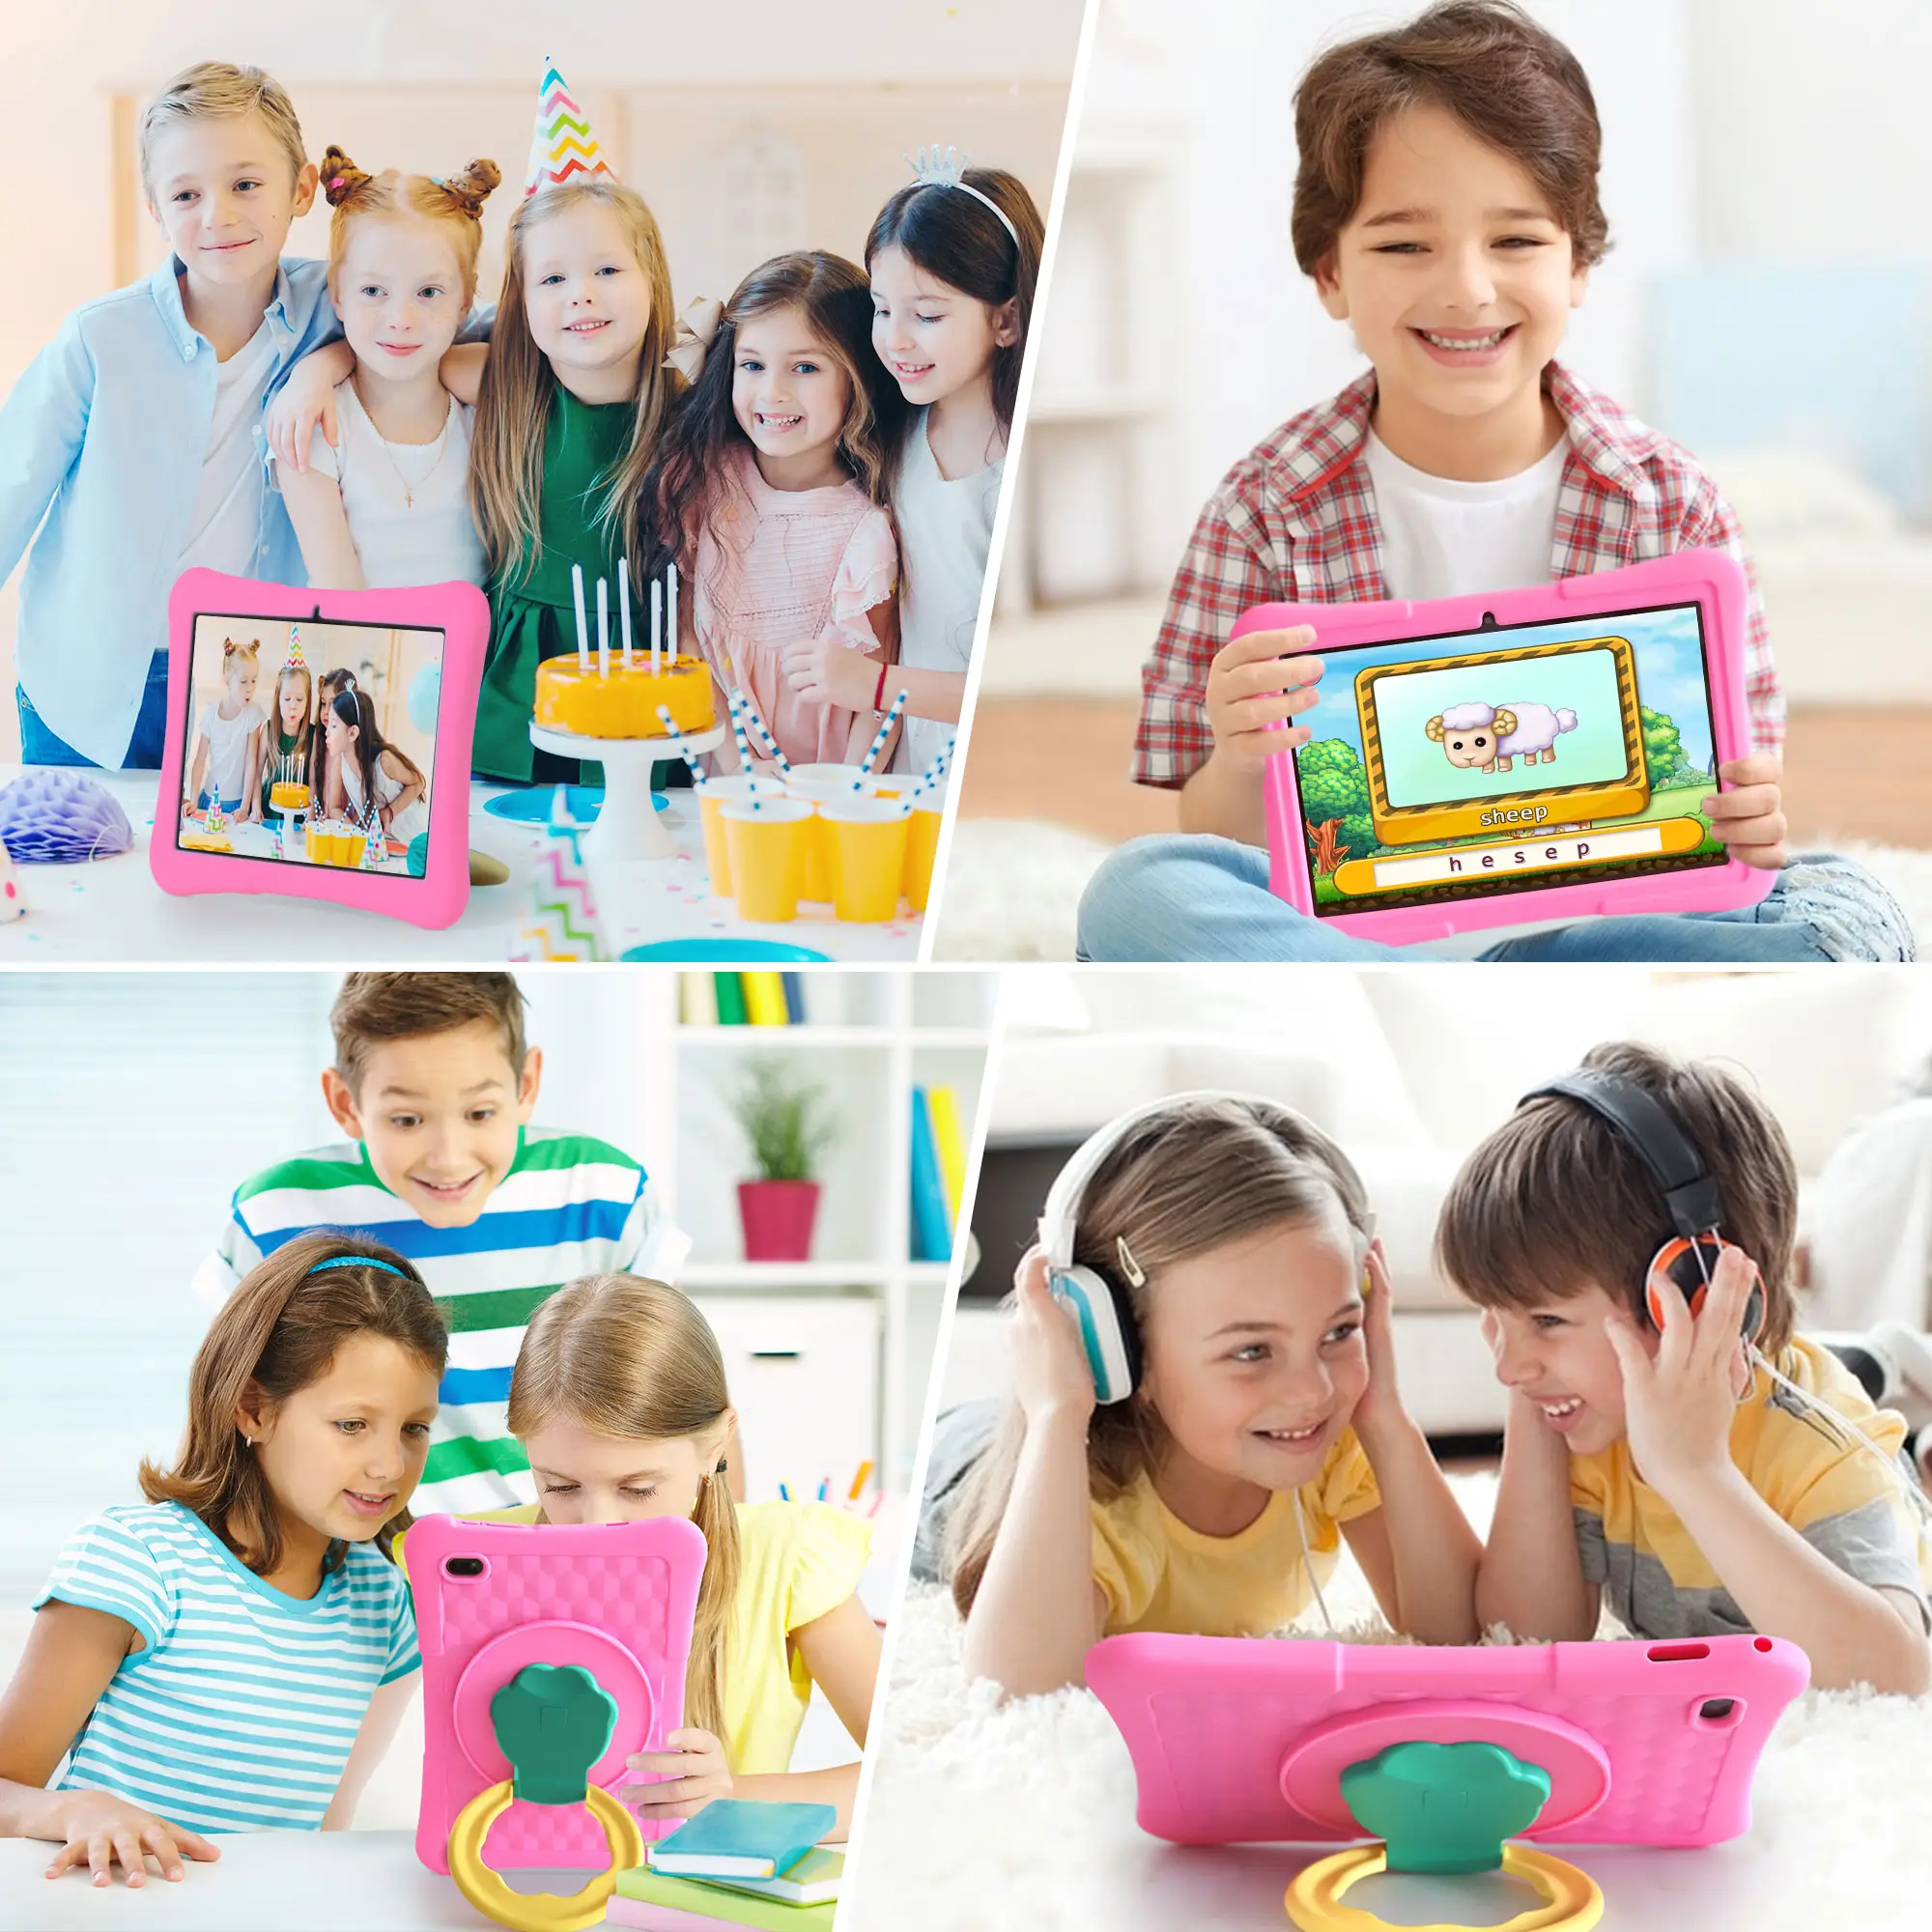 Veidoo 어린이 태블릿 PC 10 인치 어린이를위한 안드로이드 태블릿 8GB 4 확장 램 128GB ROM 와이파이 6 충격 방지 케이스와 태블릿